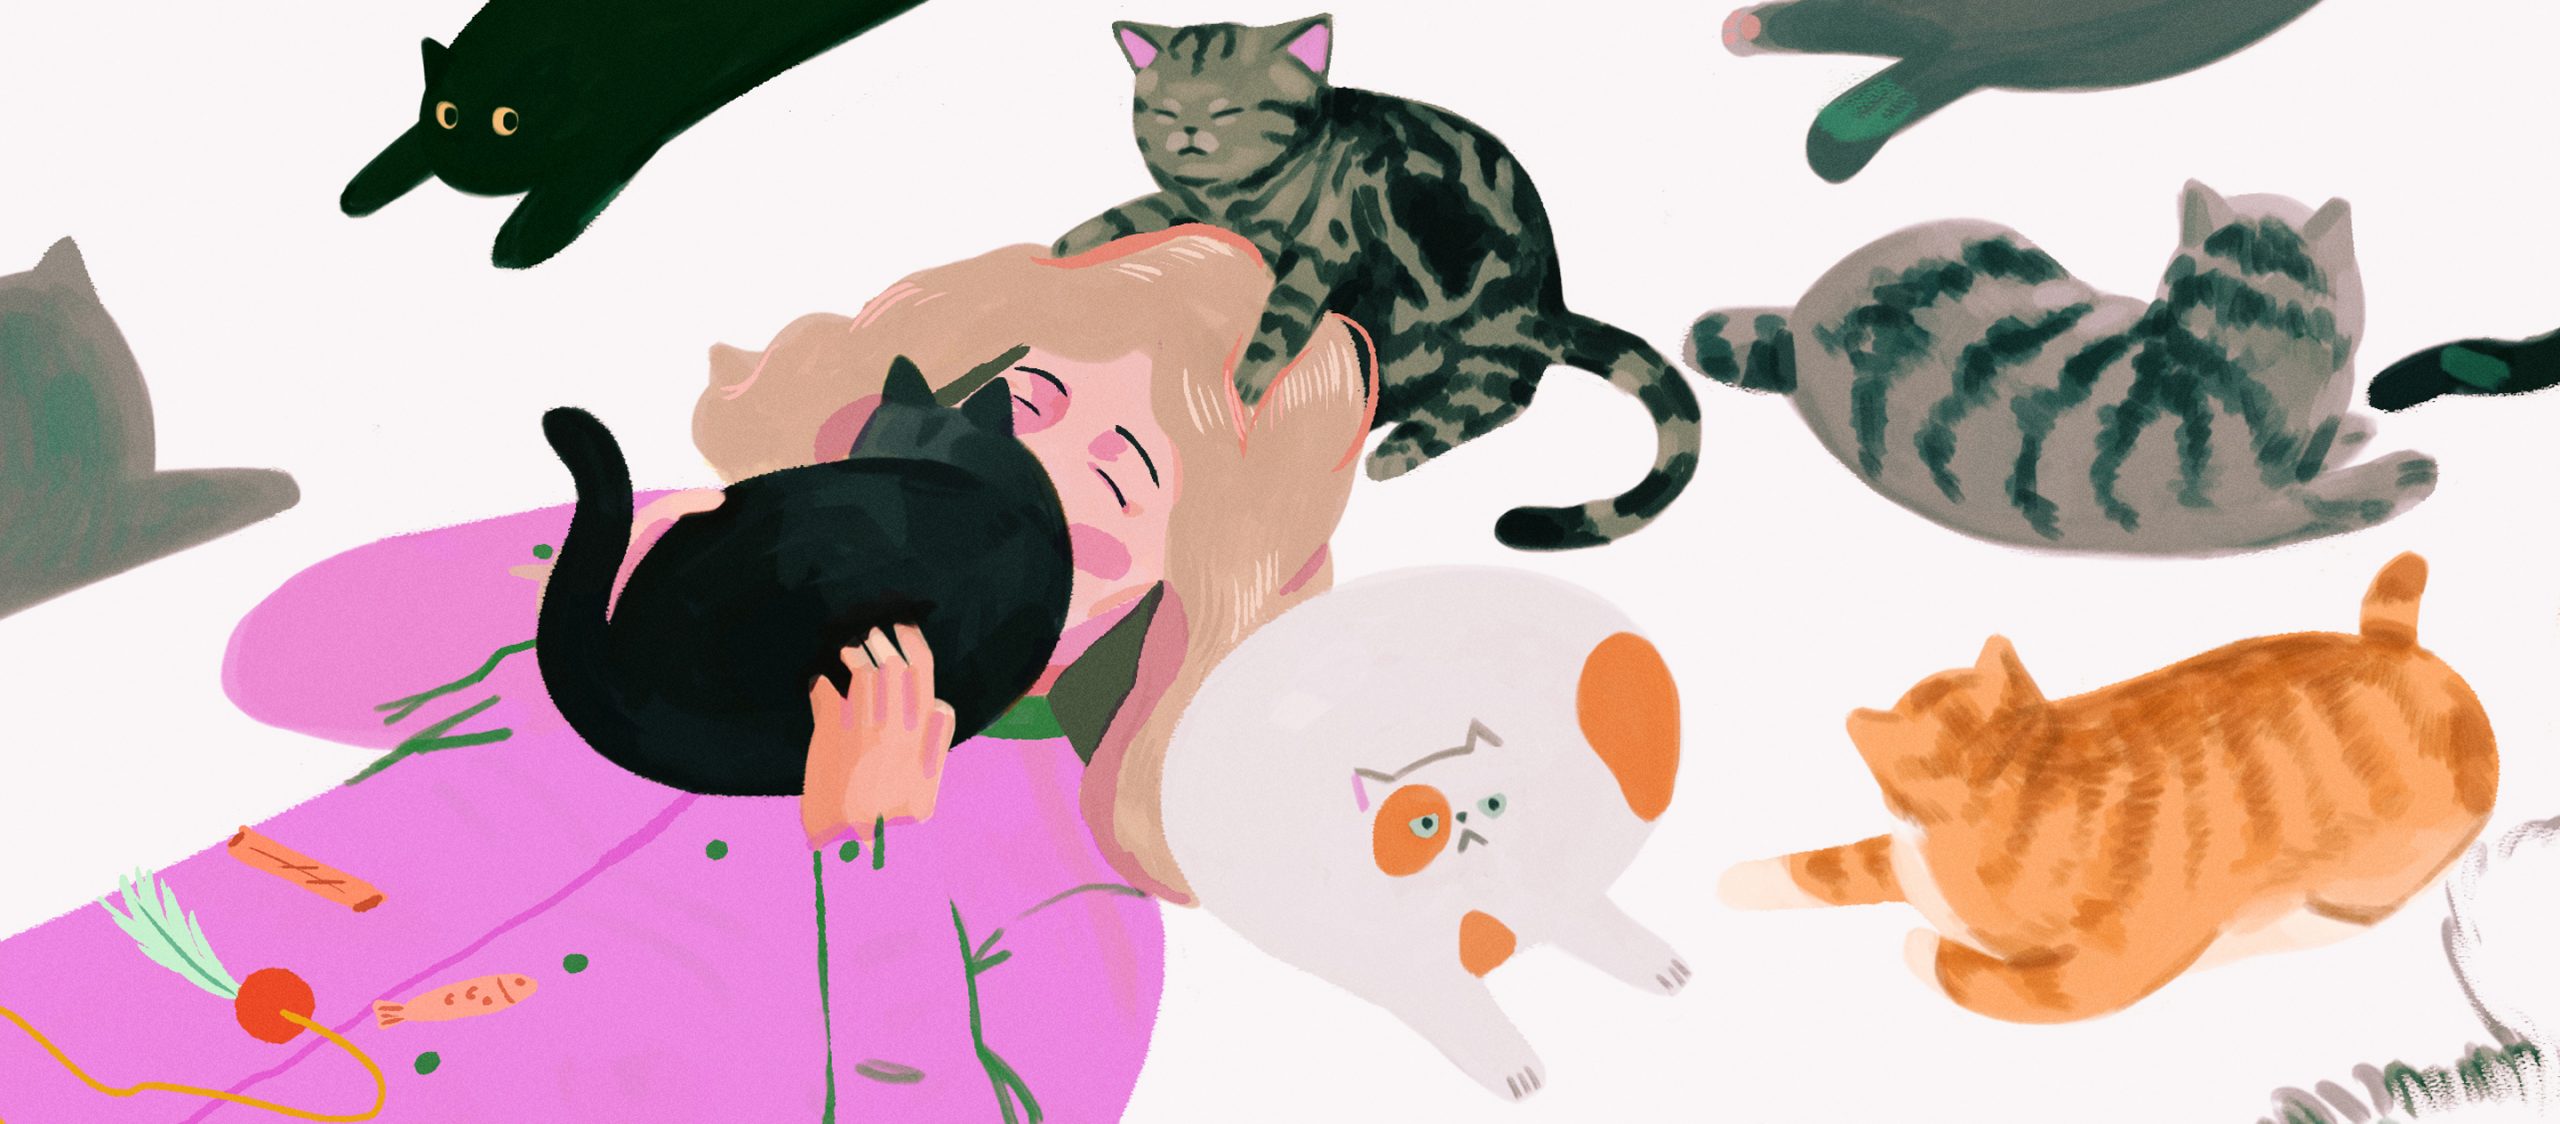 cat therapist แมวสายเอนฯ ผู้รับบทเป็นนักบำบัดจิตใจมืออาชีพในญี่ปุ่น